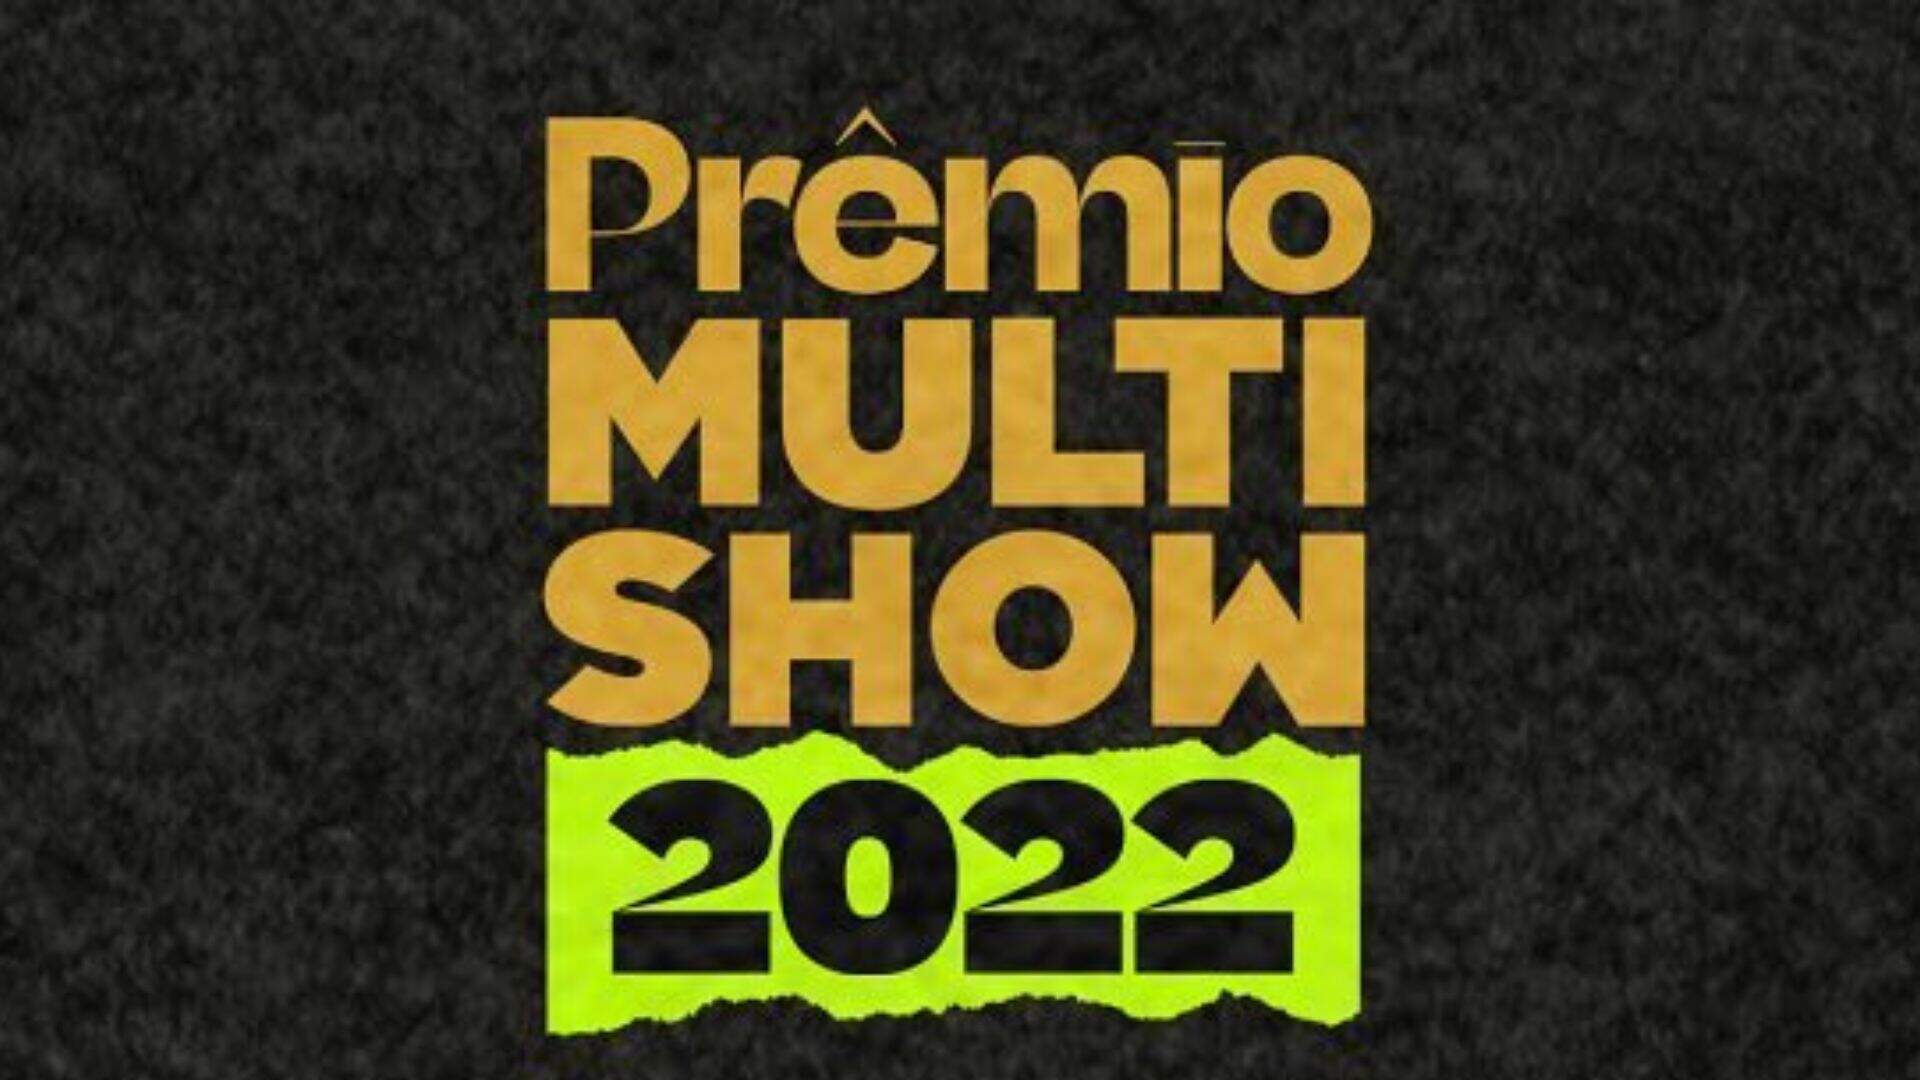 Descubra quem serão os apresentadores do “Prêmio Multishow 2022”